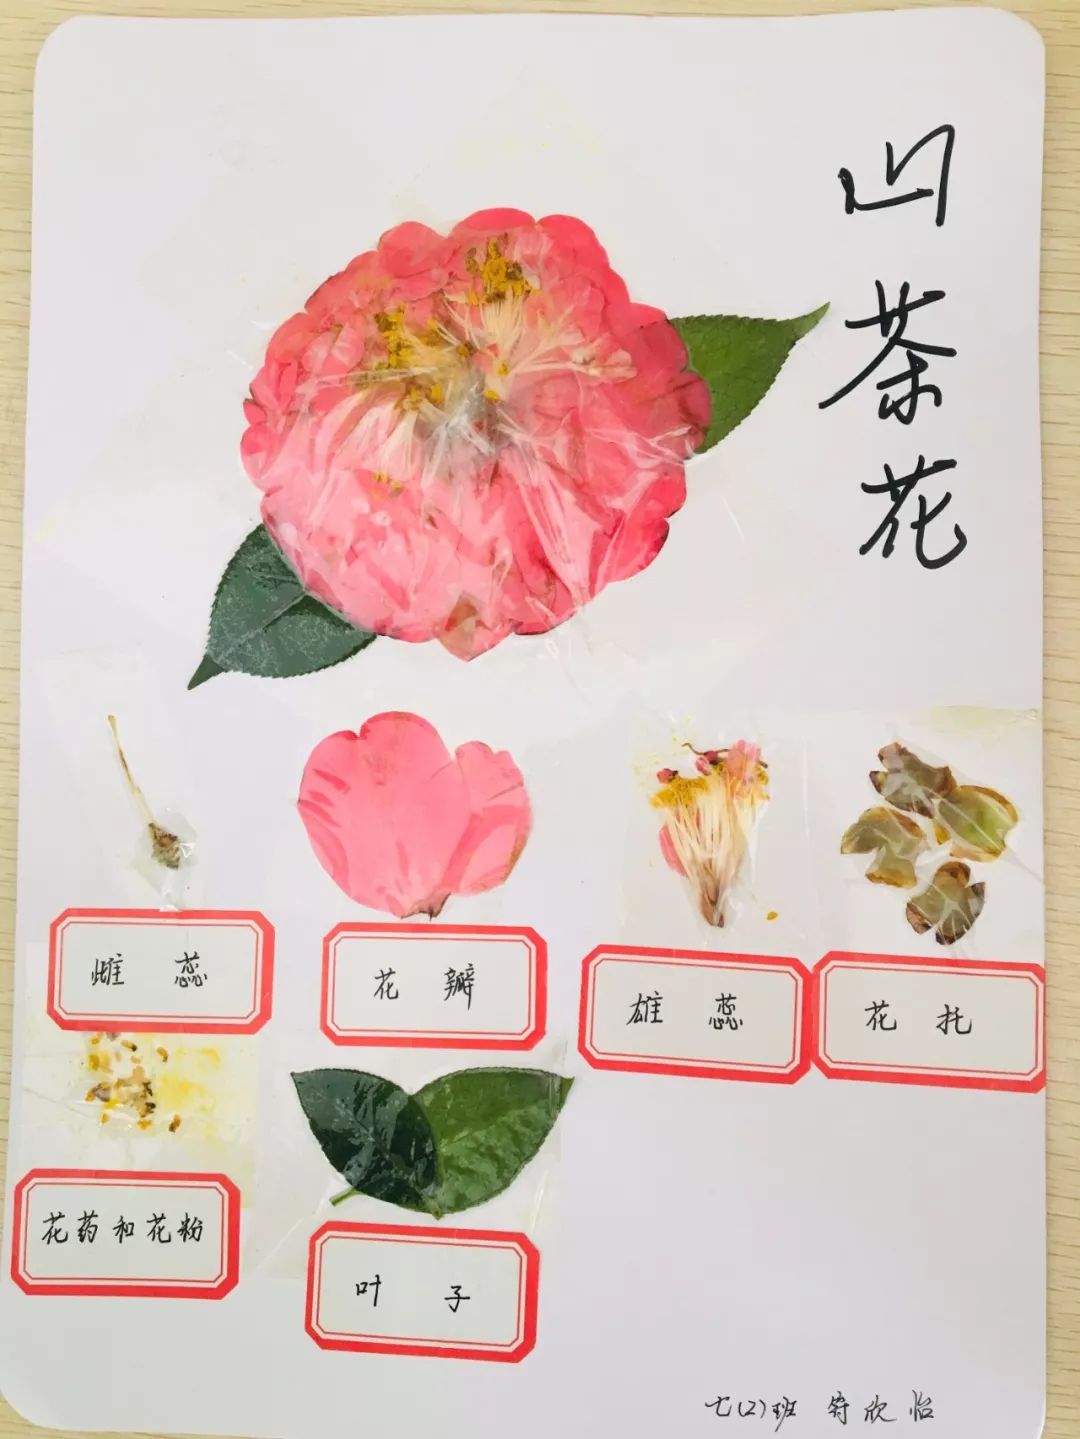 南昌民67德学校:花的结构标本制作